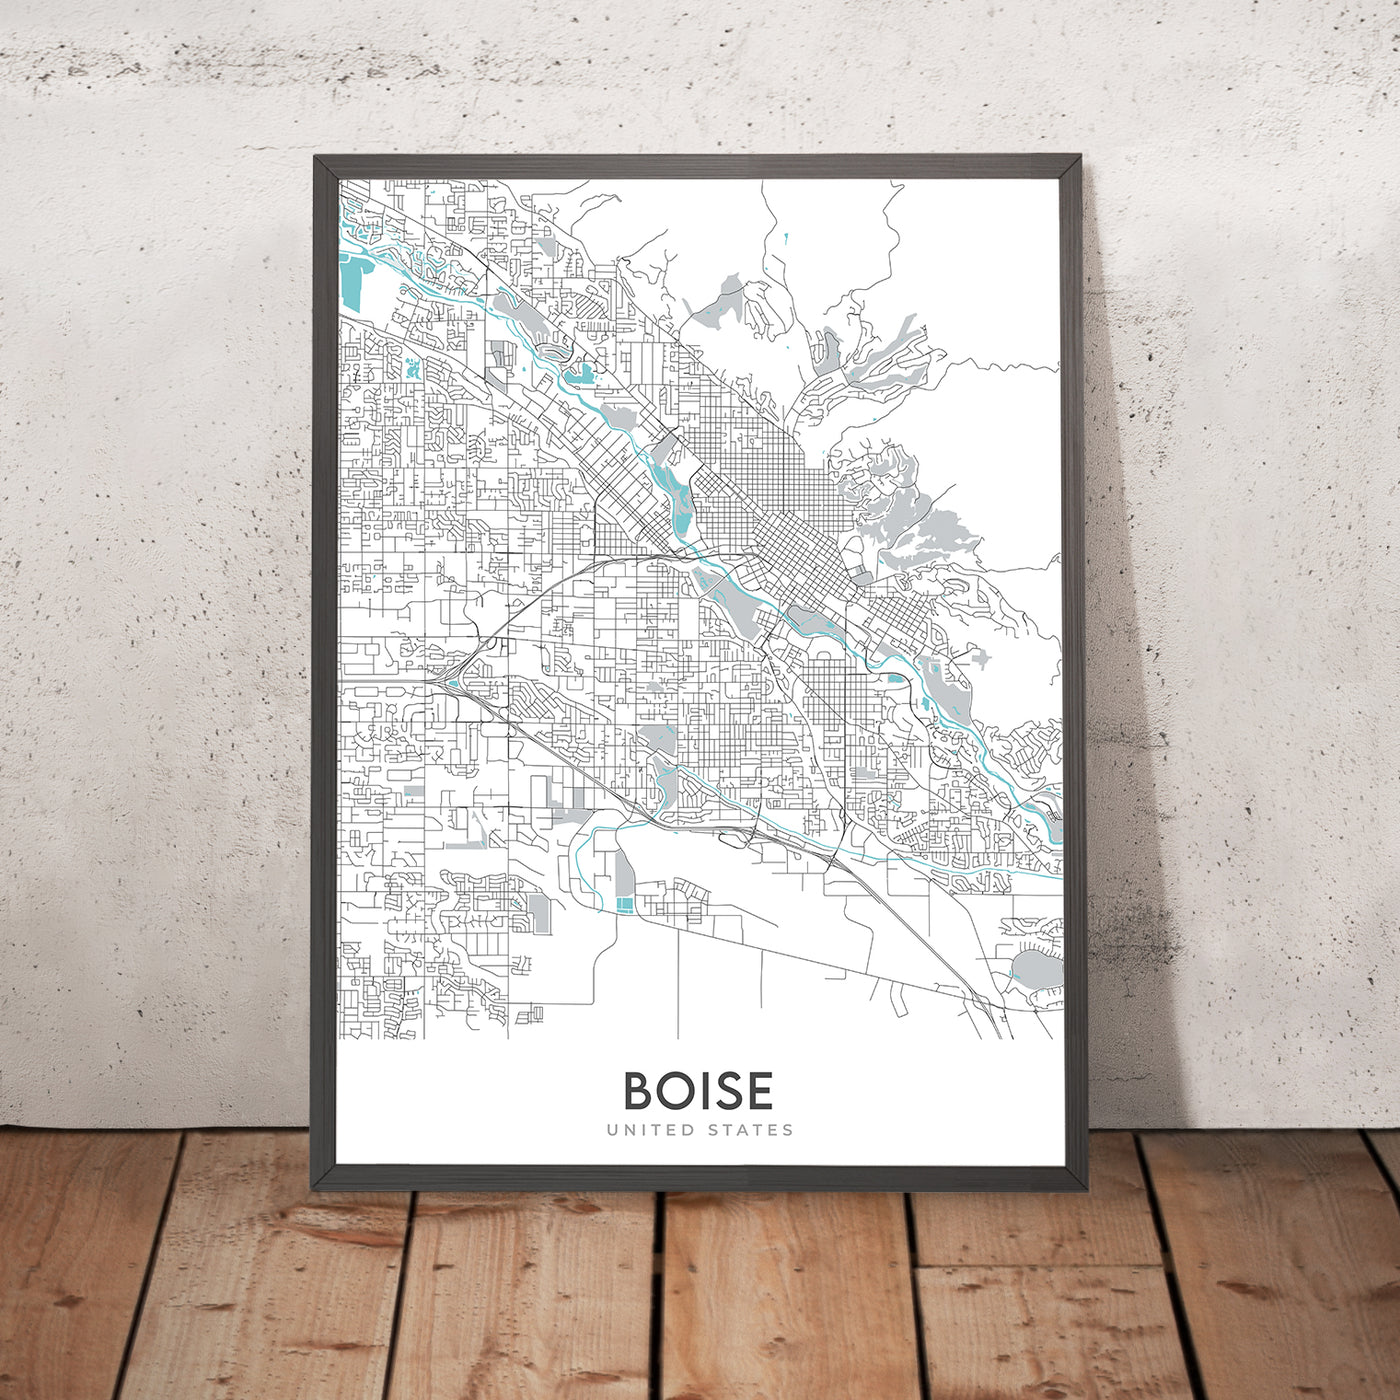 Plan de la ville moderne de Boise, ID : centre-ville, Boise State University, Idaho State Capitol, Hyde Park, Boise River